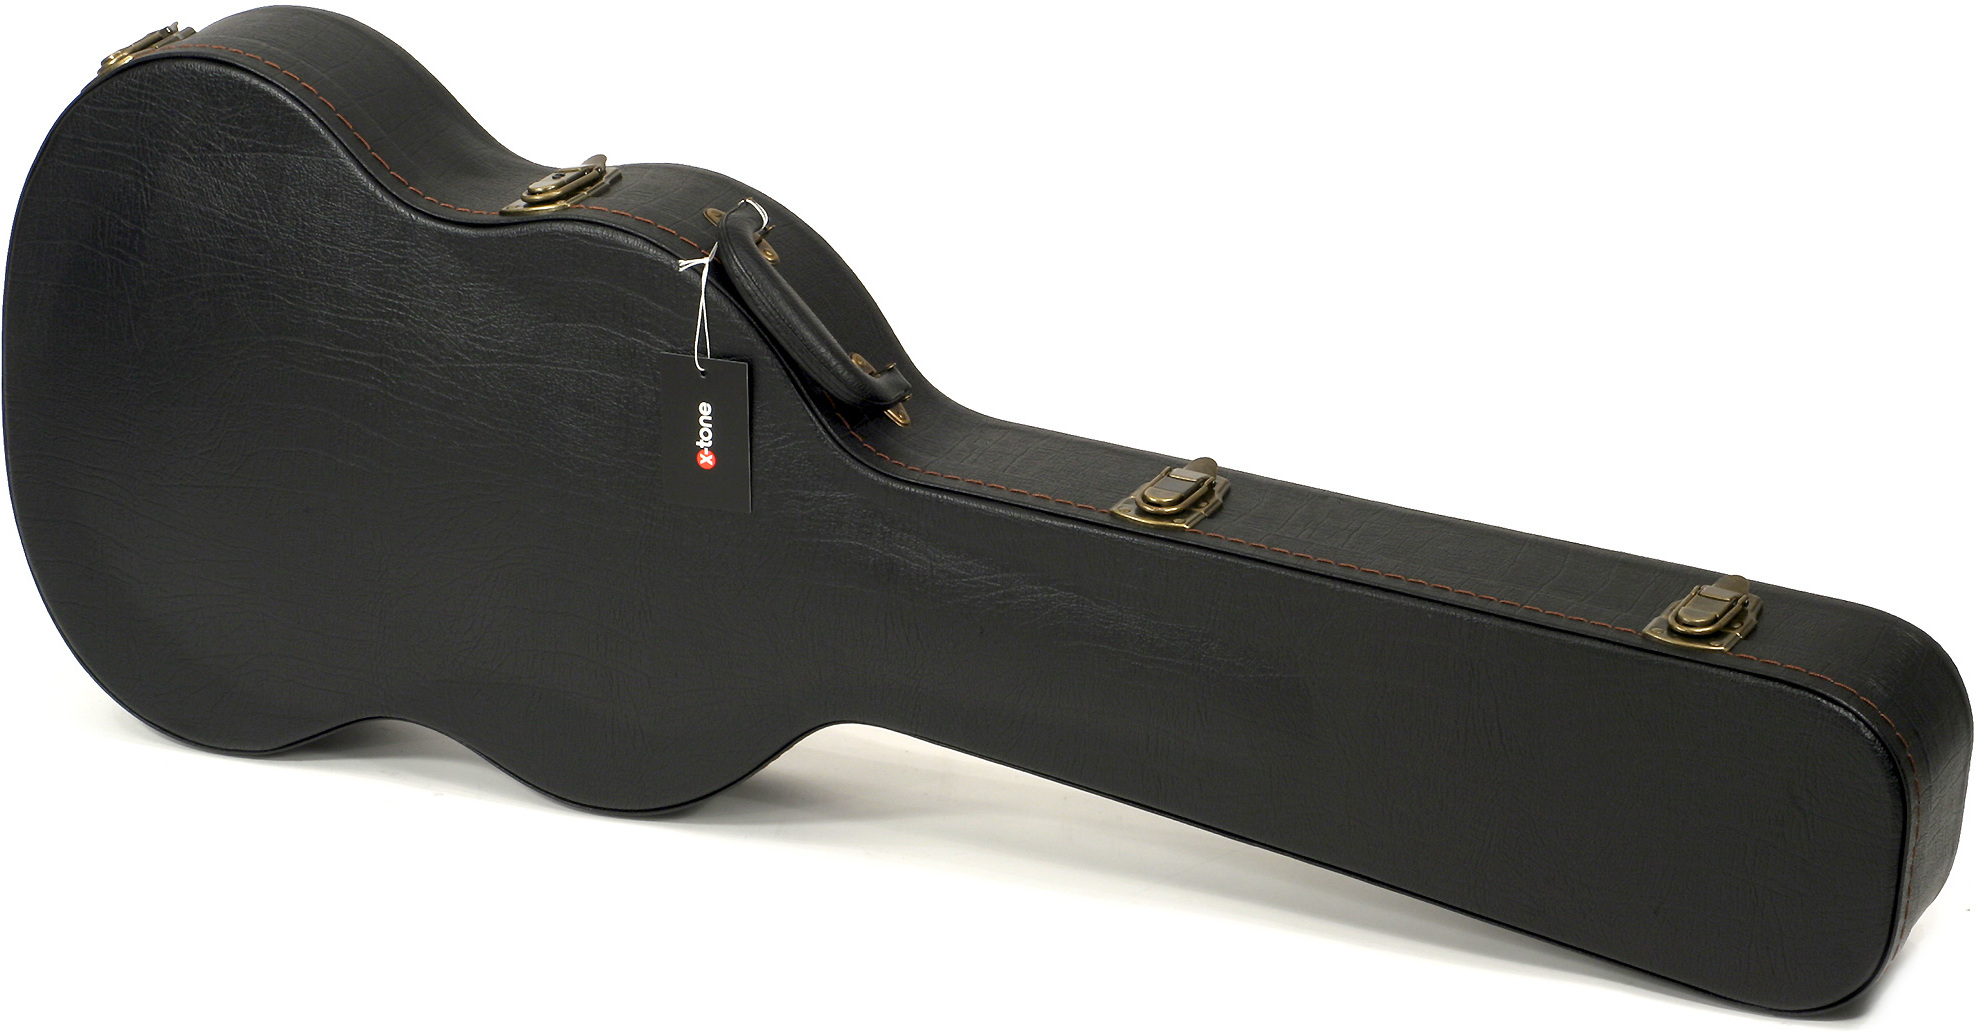 X-tone 1553 Deluxe Electrique Sg En Forme Black - Electric guitar case - Main picture